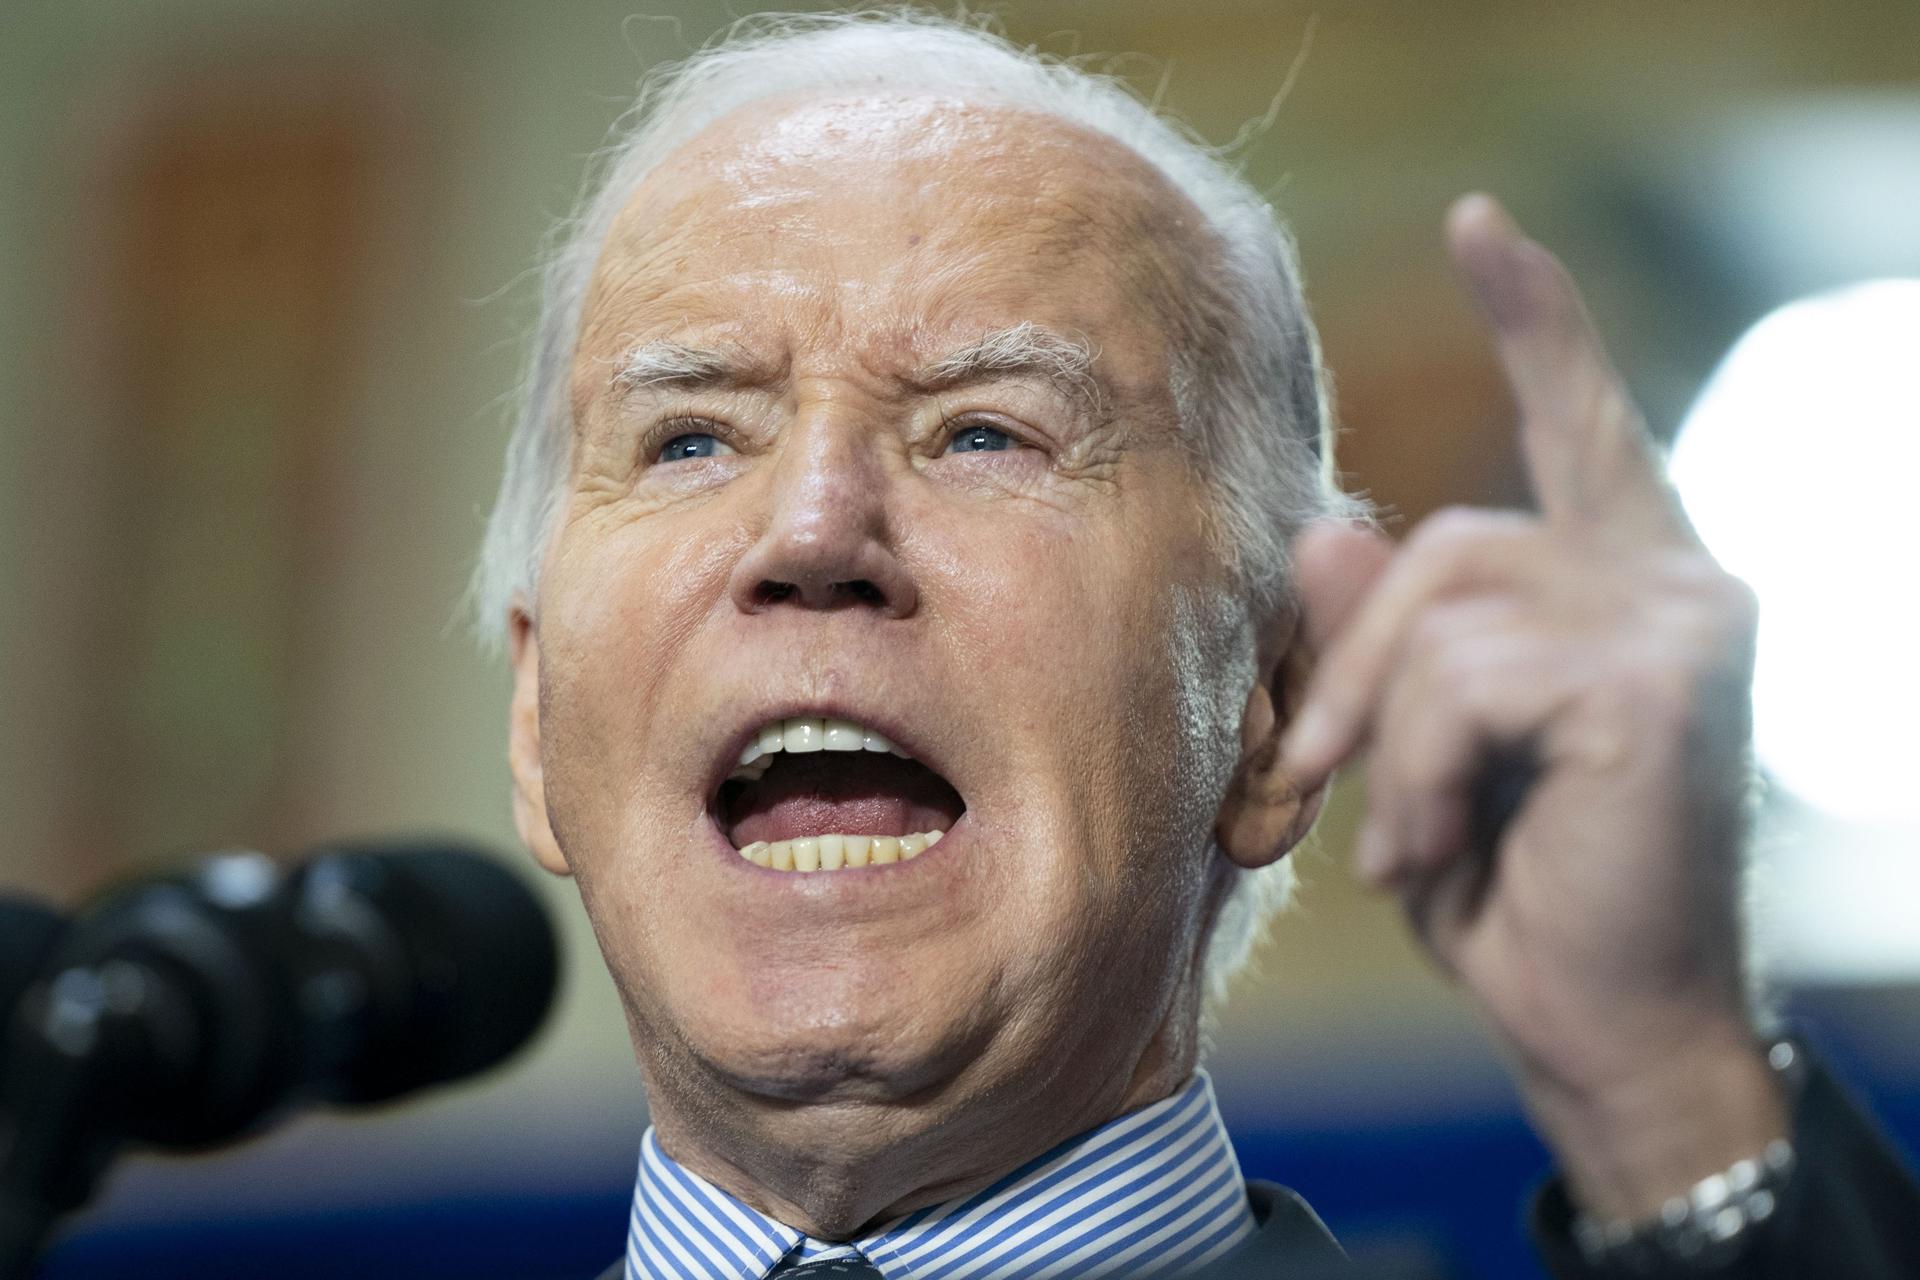 Biden prohíbe uso de TikTok, pero su equipo de campaña seguirá empleando la aplicación